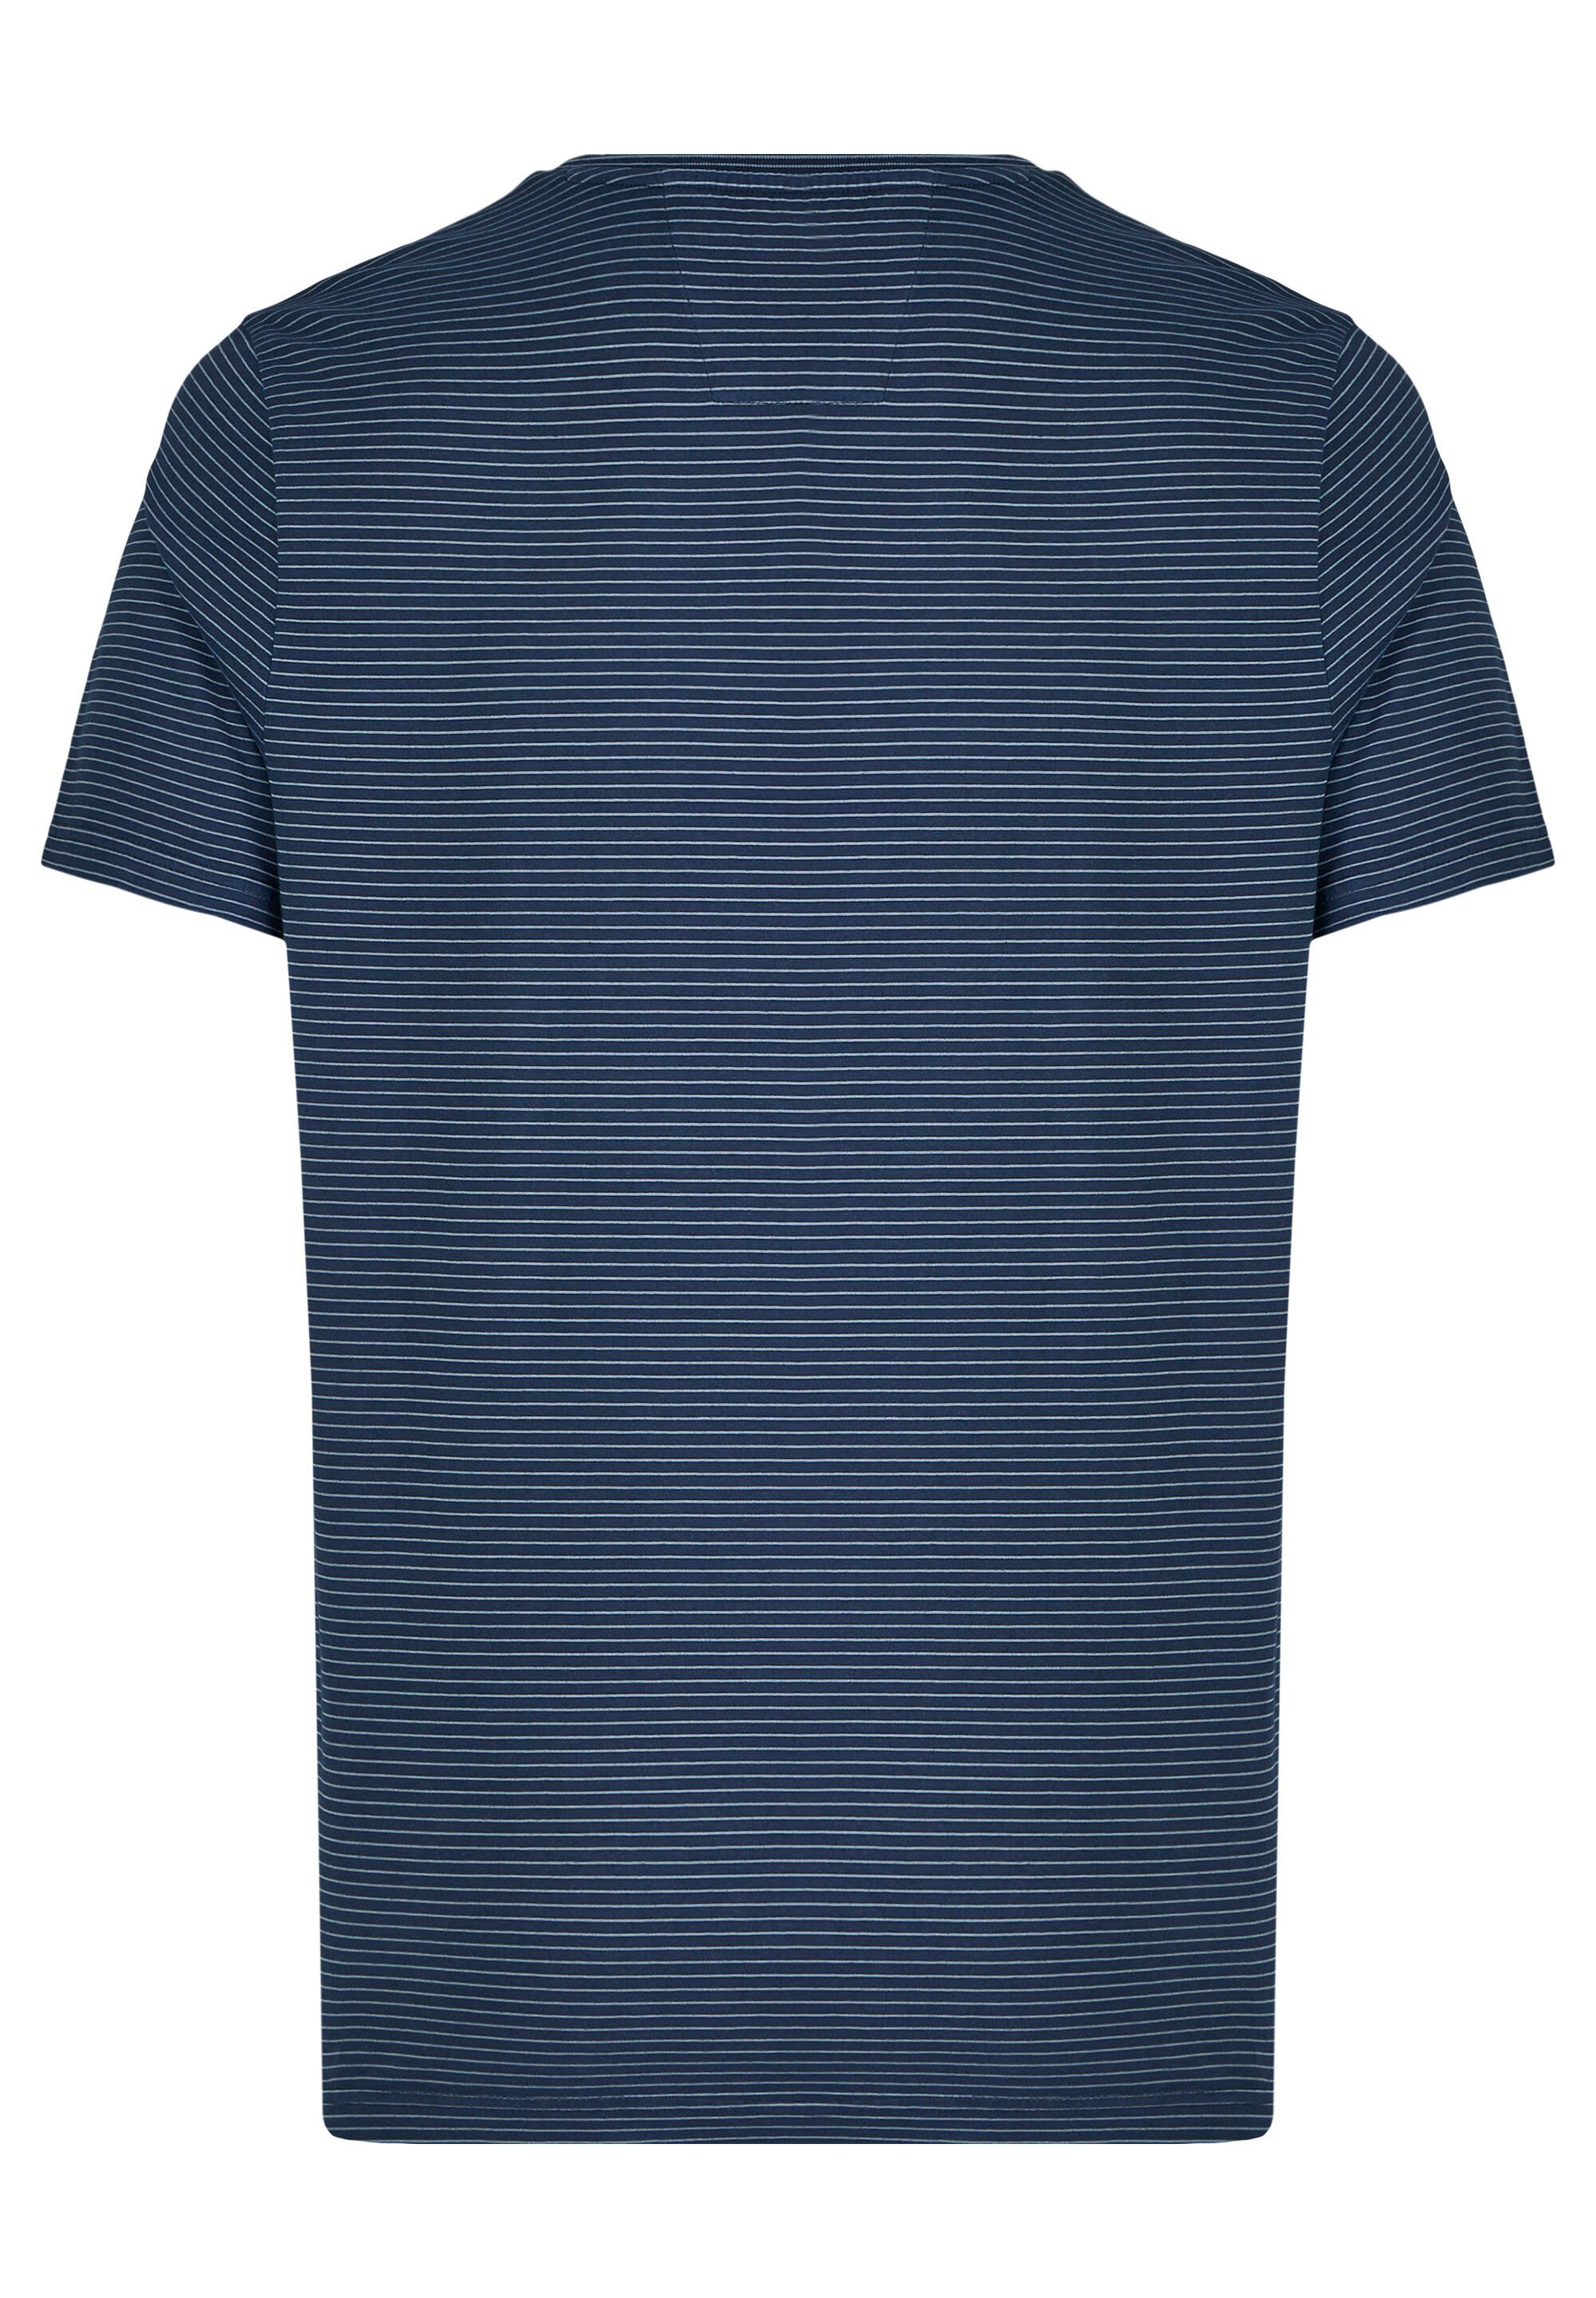 HECHTER PARIS T-Shirt Brusttasche dark blue